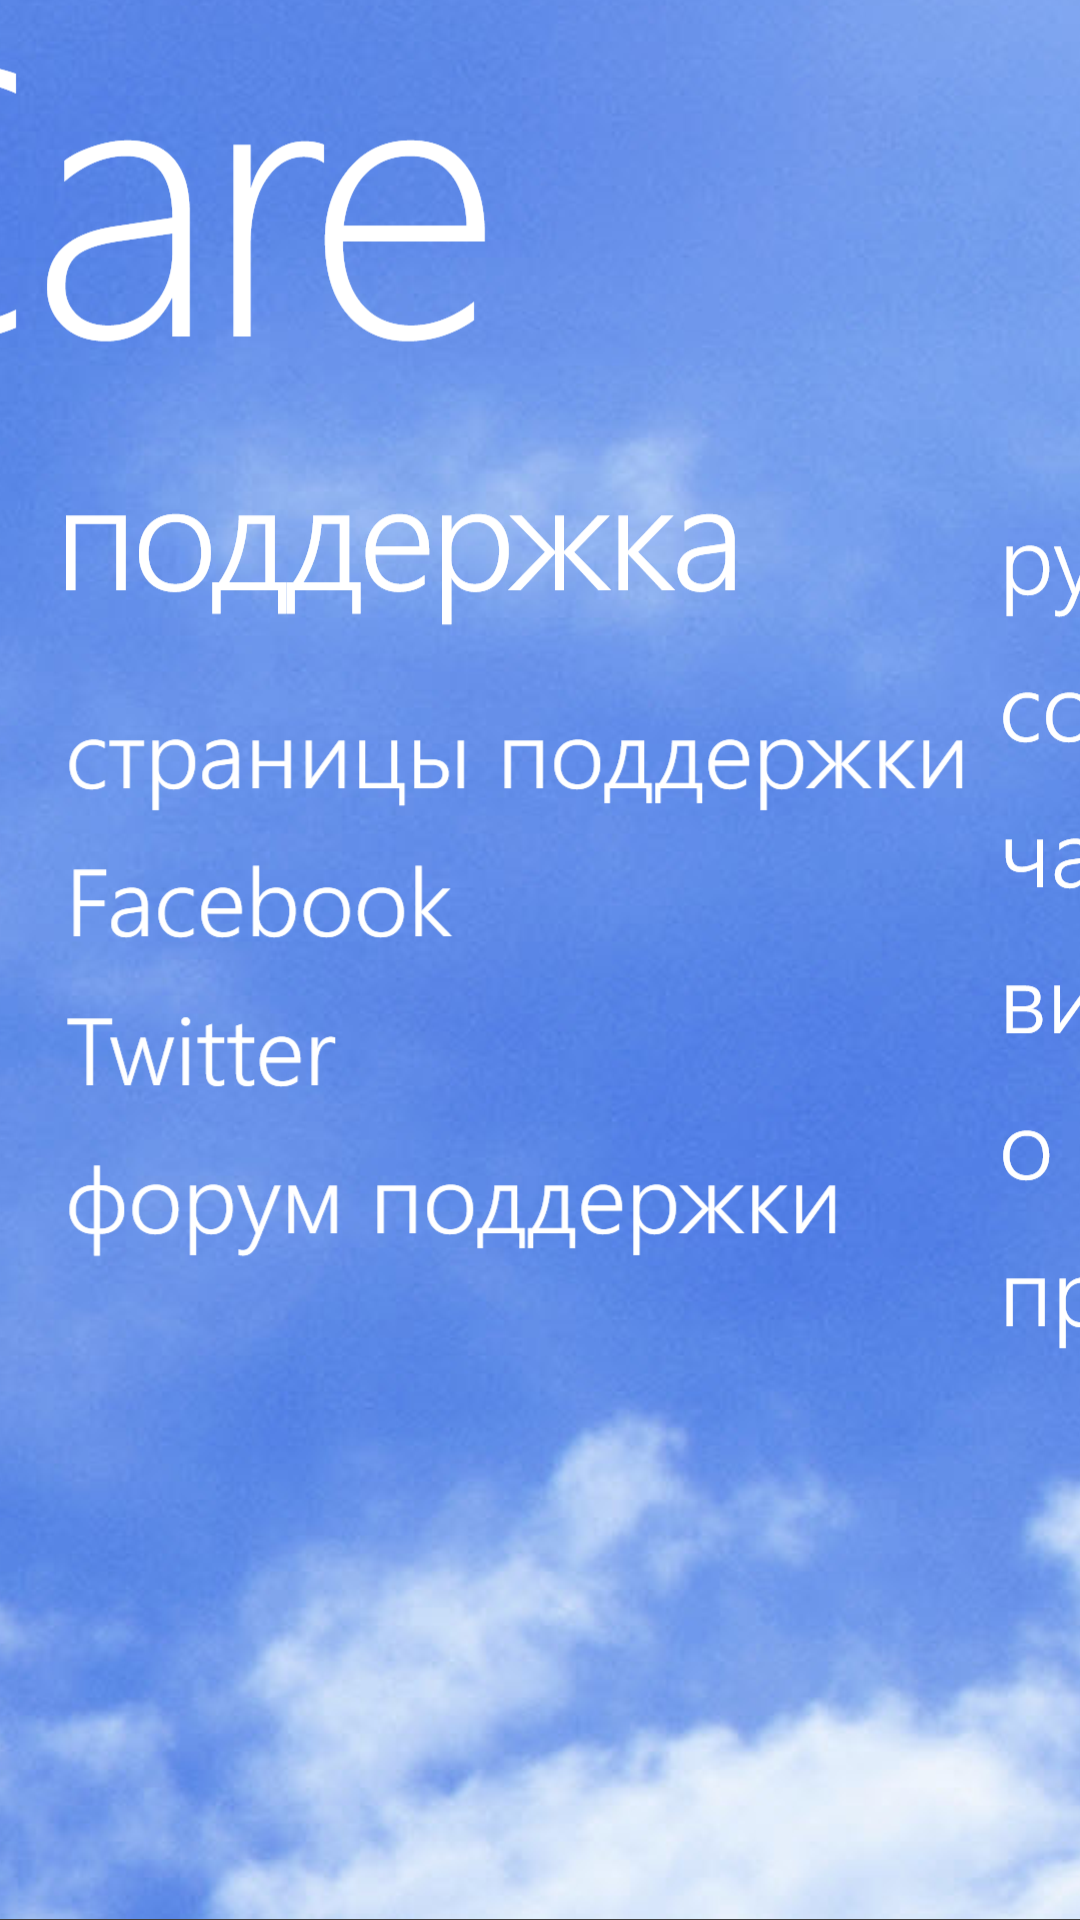 Приложения для Windows Phone: Nokia Care-2